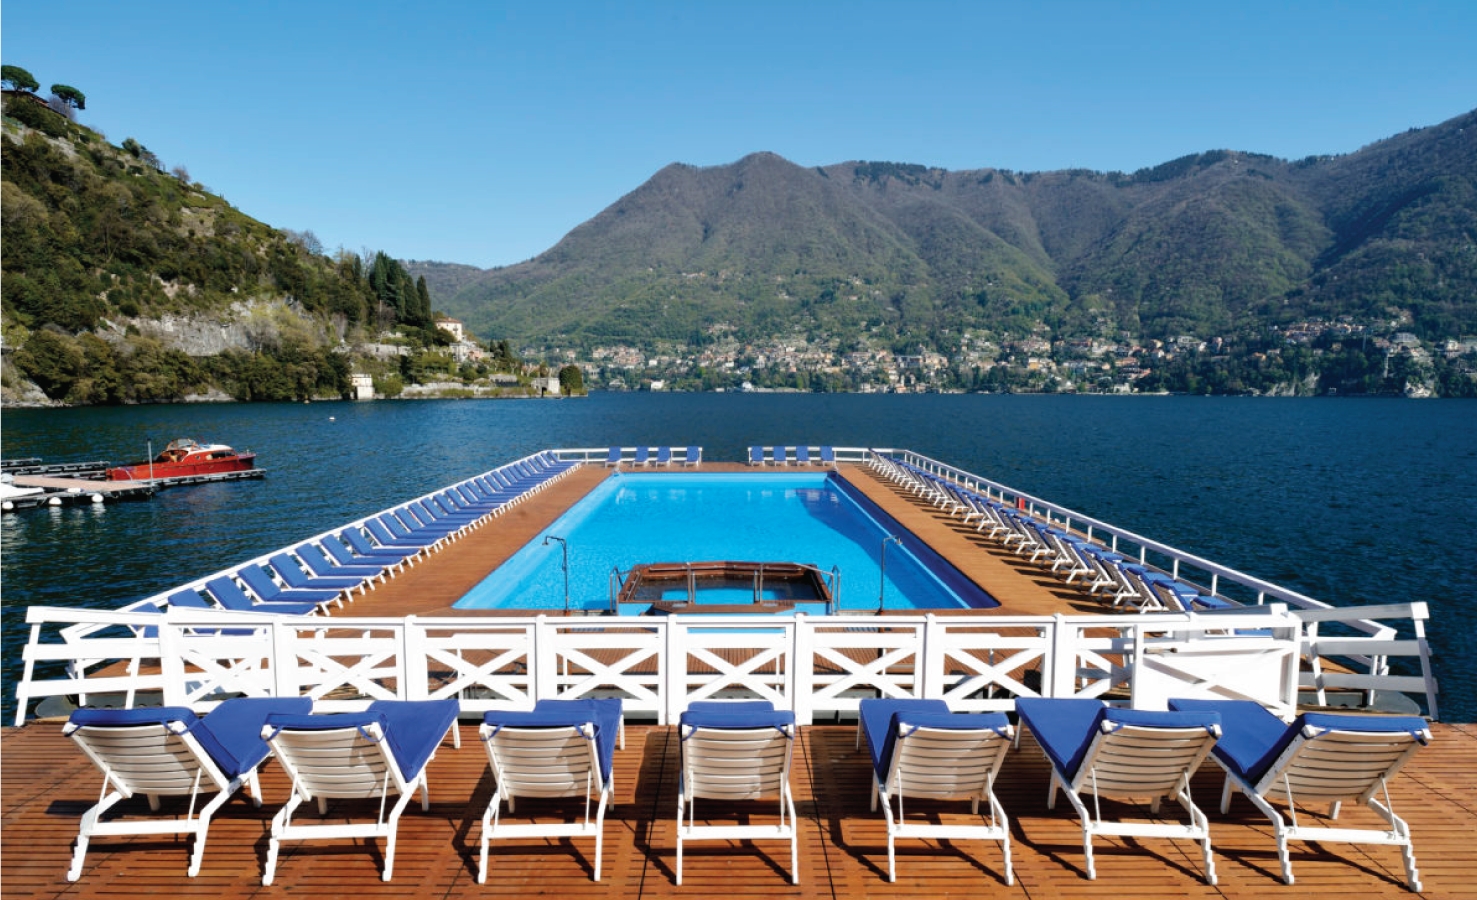 Pool view across Lake Como at Villa D'Este on Lake Como Italy